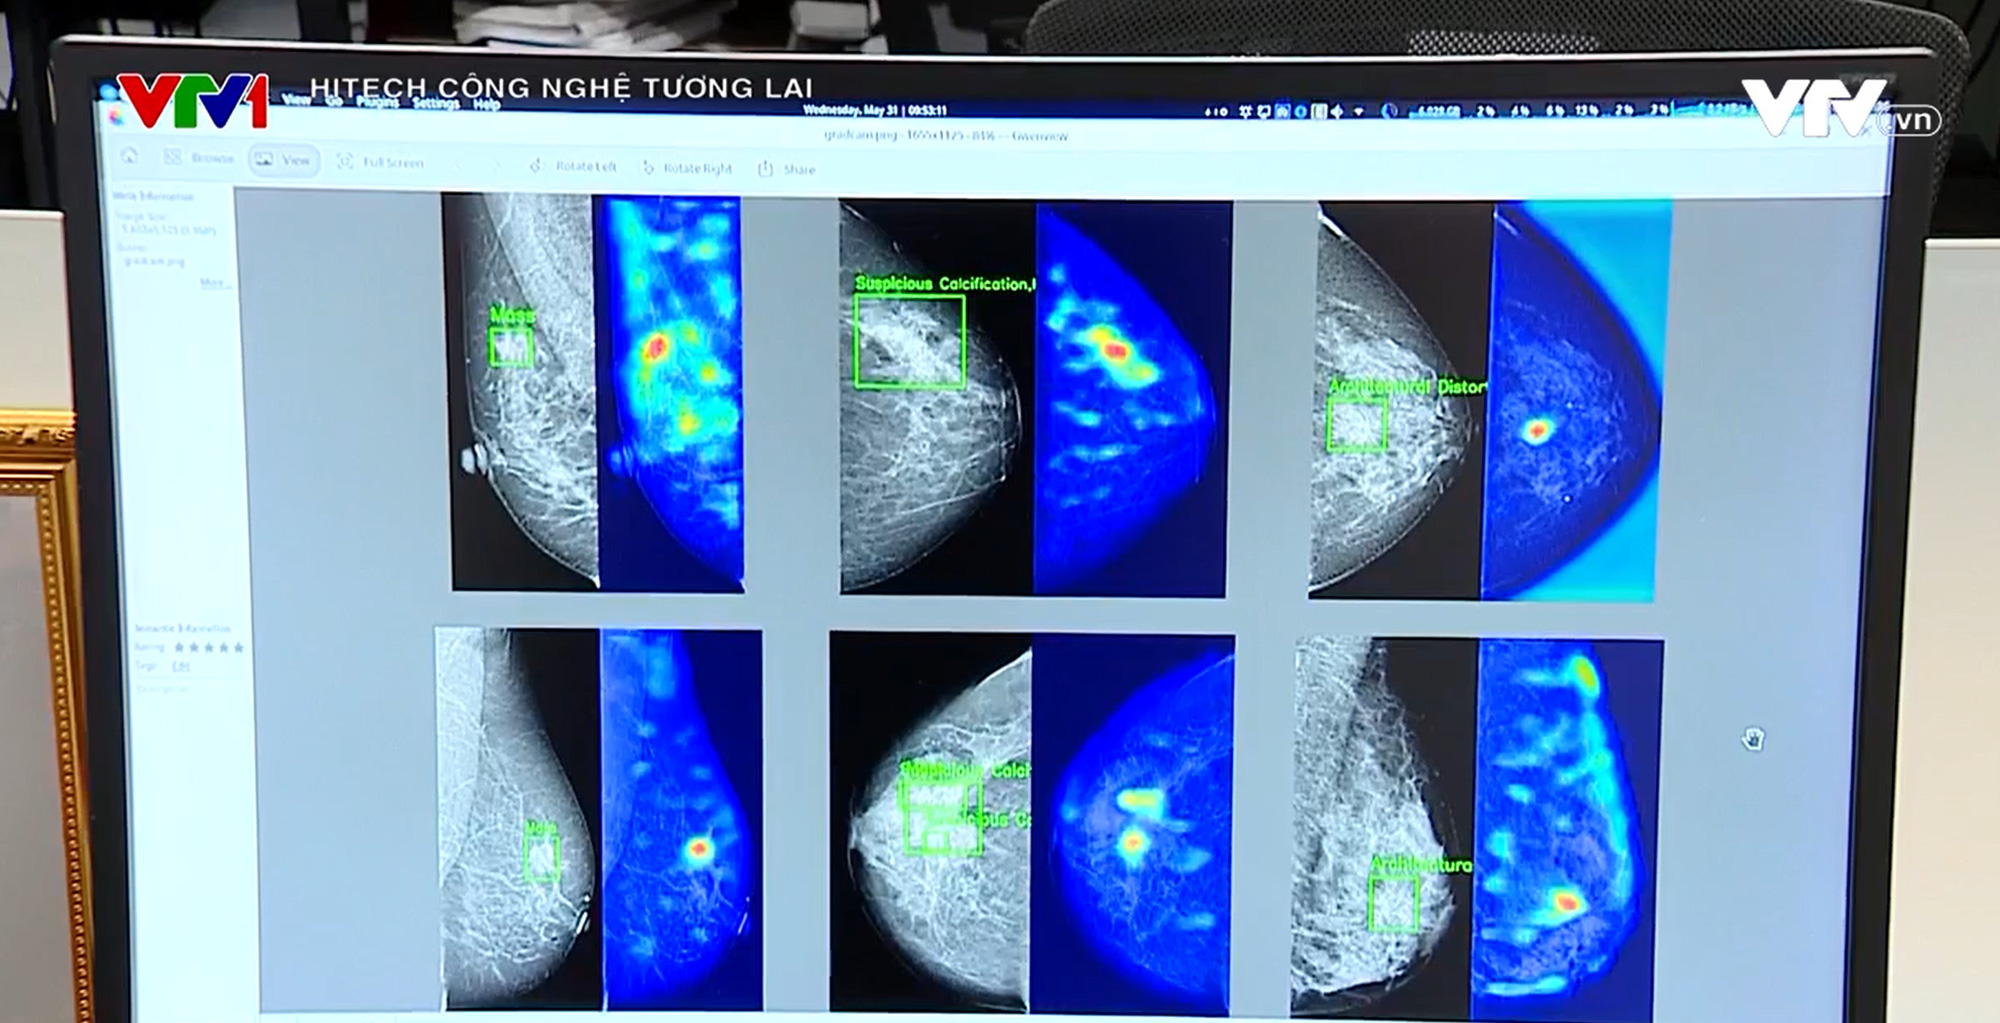 Ứng dụng AI giúp phát hiện ung thư vú qua sàng lọc nhũ ảnh - Ảnh 2.